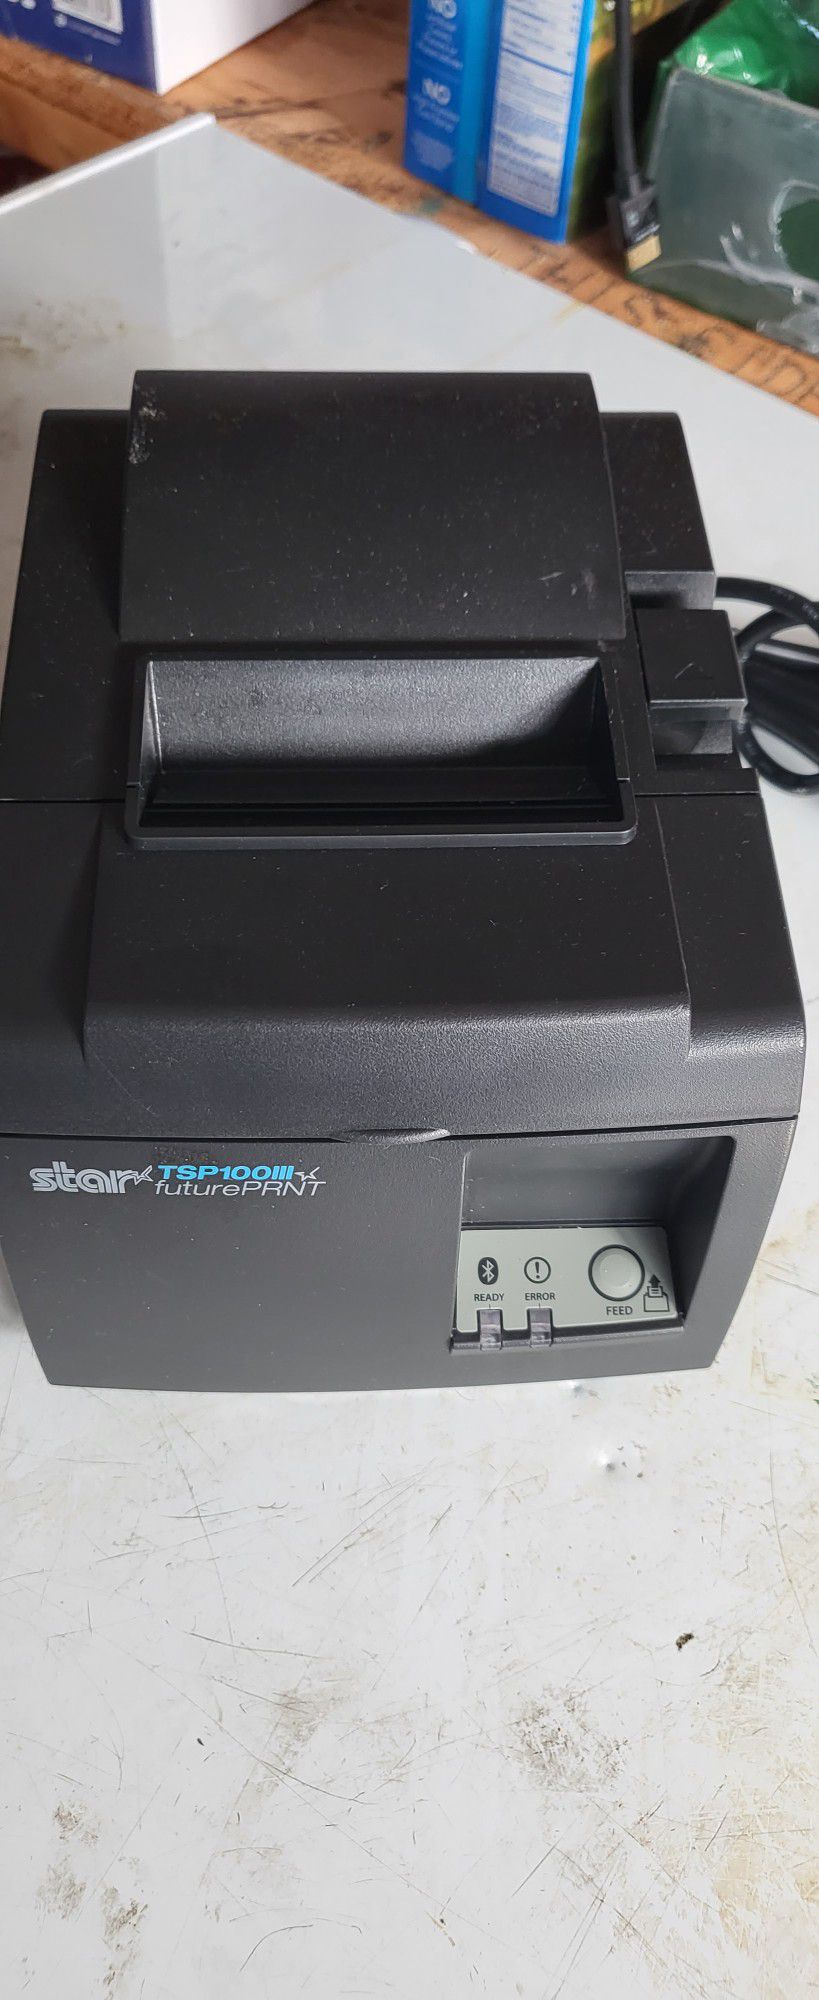 TSP100 Star Printer 